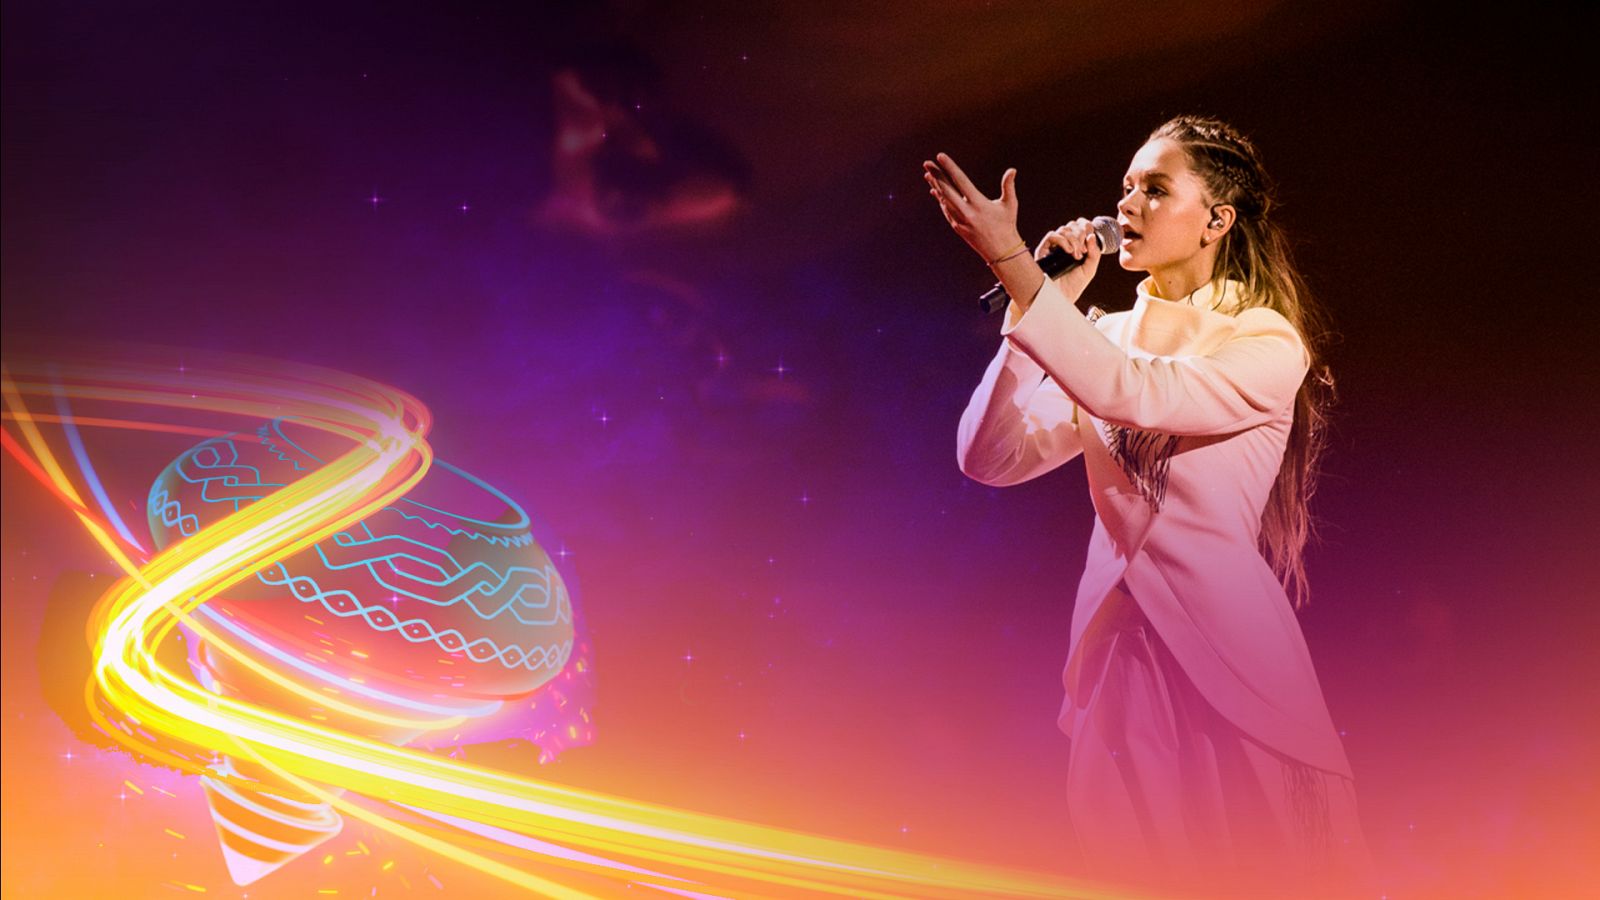 Eurovisión Junior 2022 - Ucrania: Ztala Dziunka canta "Nezlamna" - Ver ahora